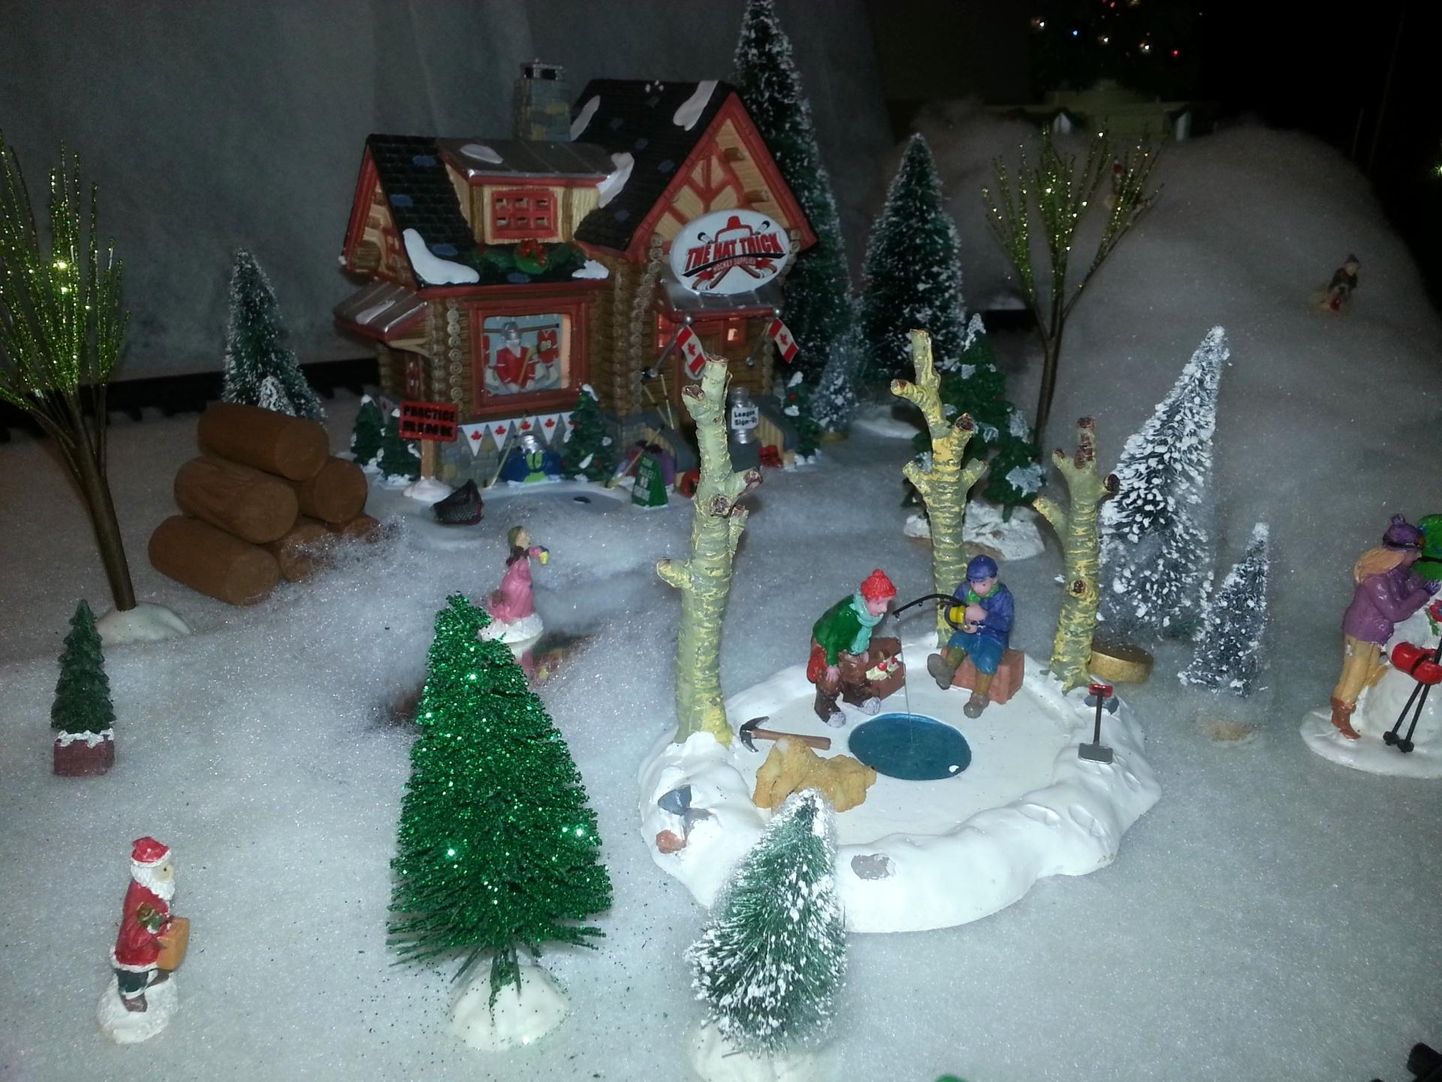 Rockvere jõuluküla valmib spetsiaalselt selleks tehtud maketi järgi.